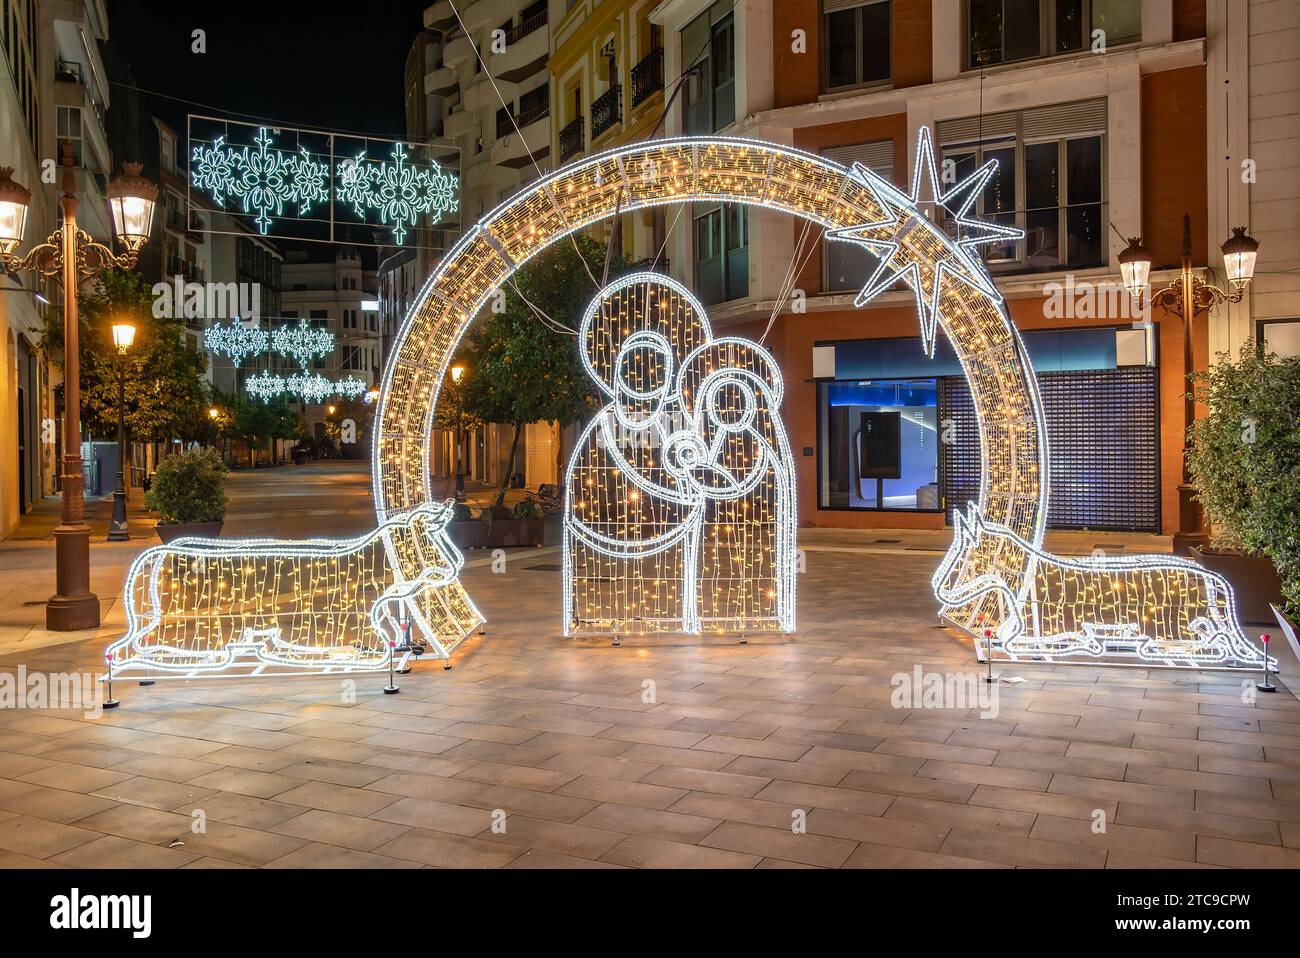 Decorazione natalizia nel centro della città di Huelva che rappresenta la Natività di Gesù a Betlemme. Scena religiosa della Sacra famiglia in Andalusia, Spagna Foto Stock